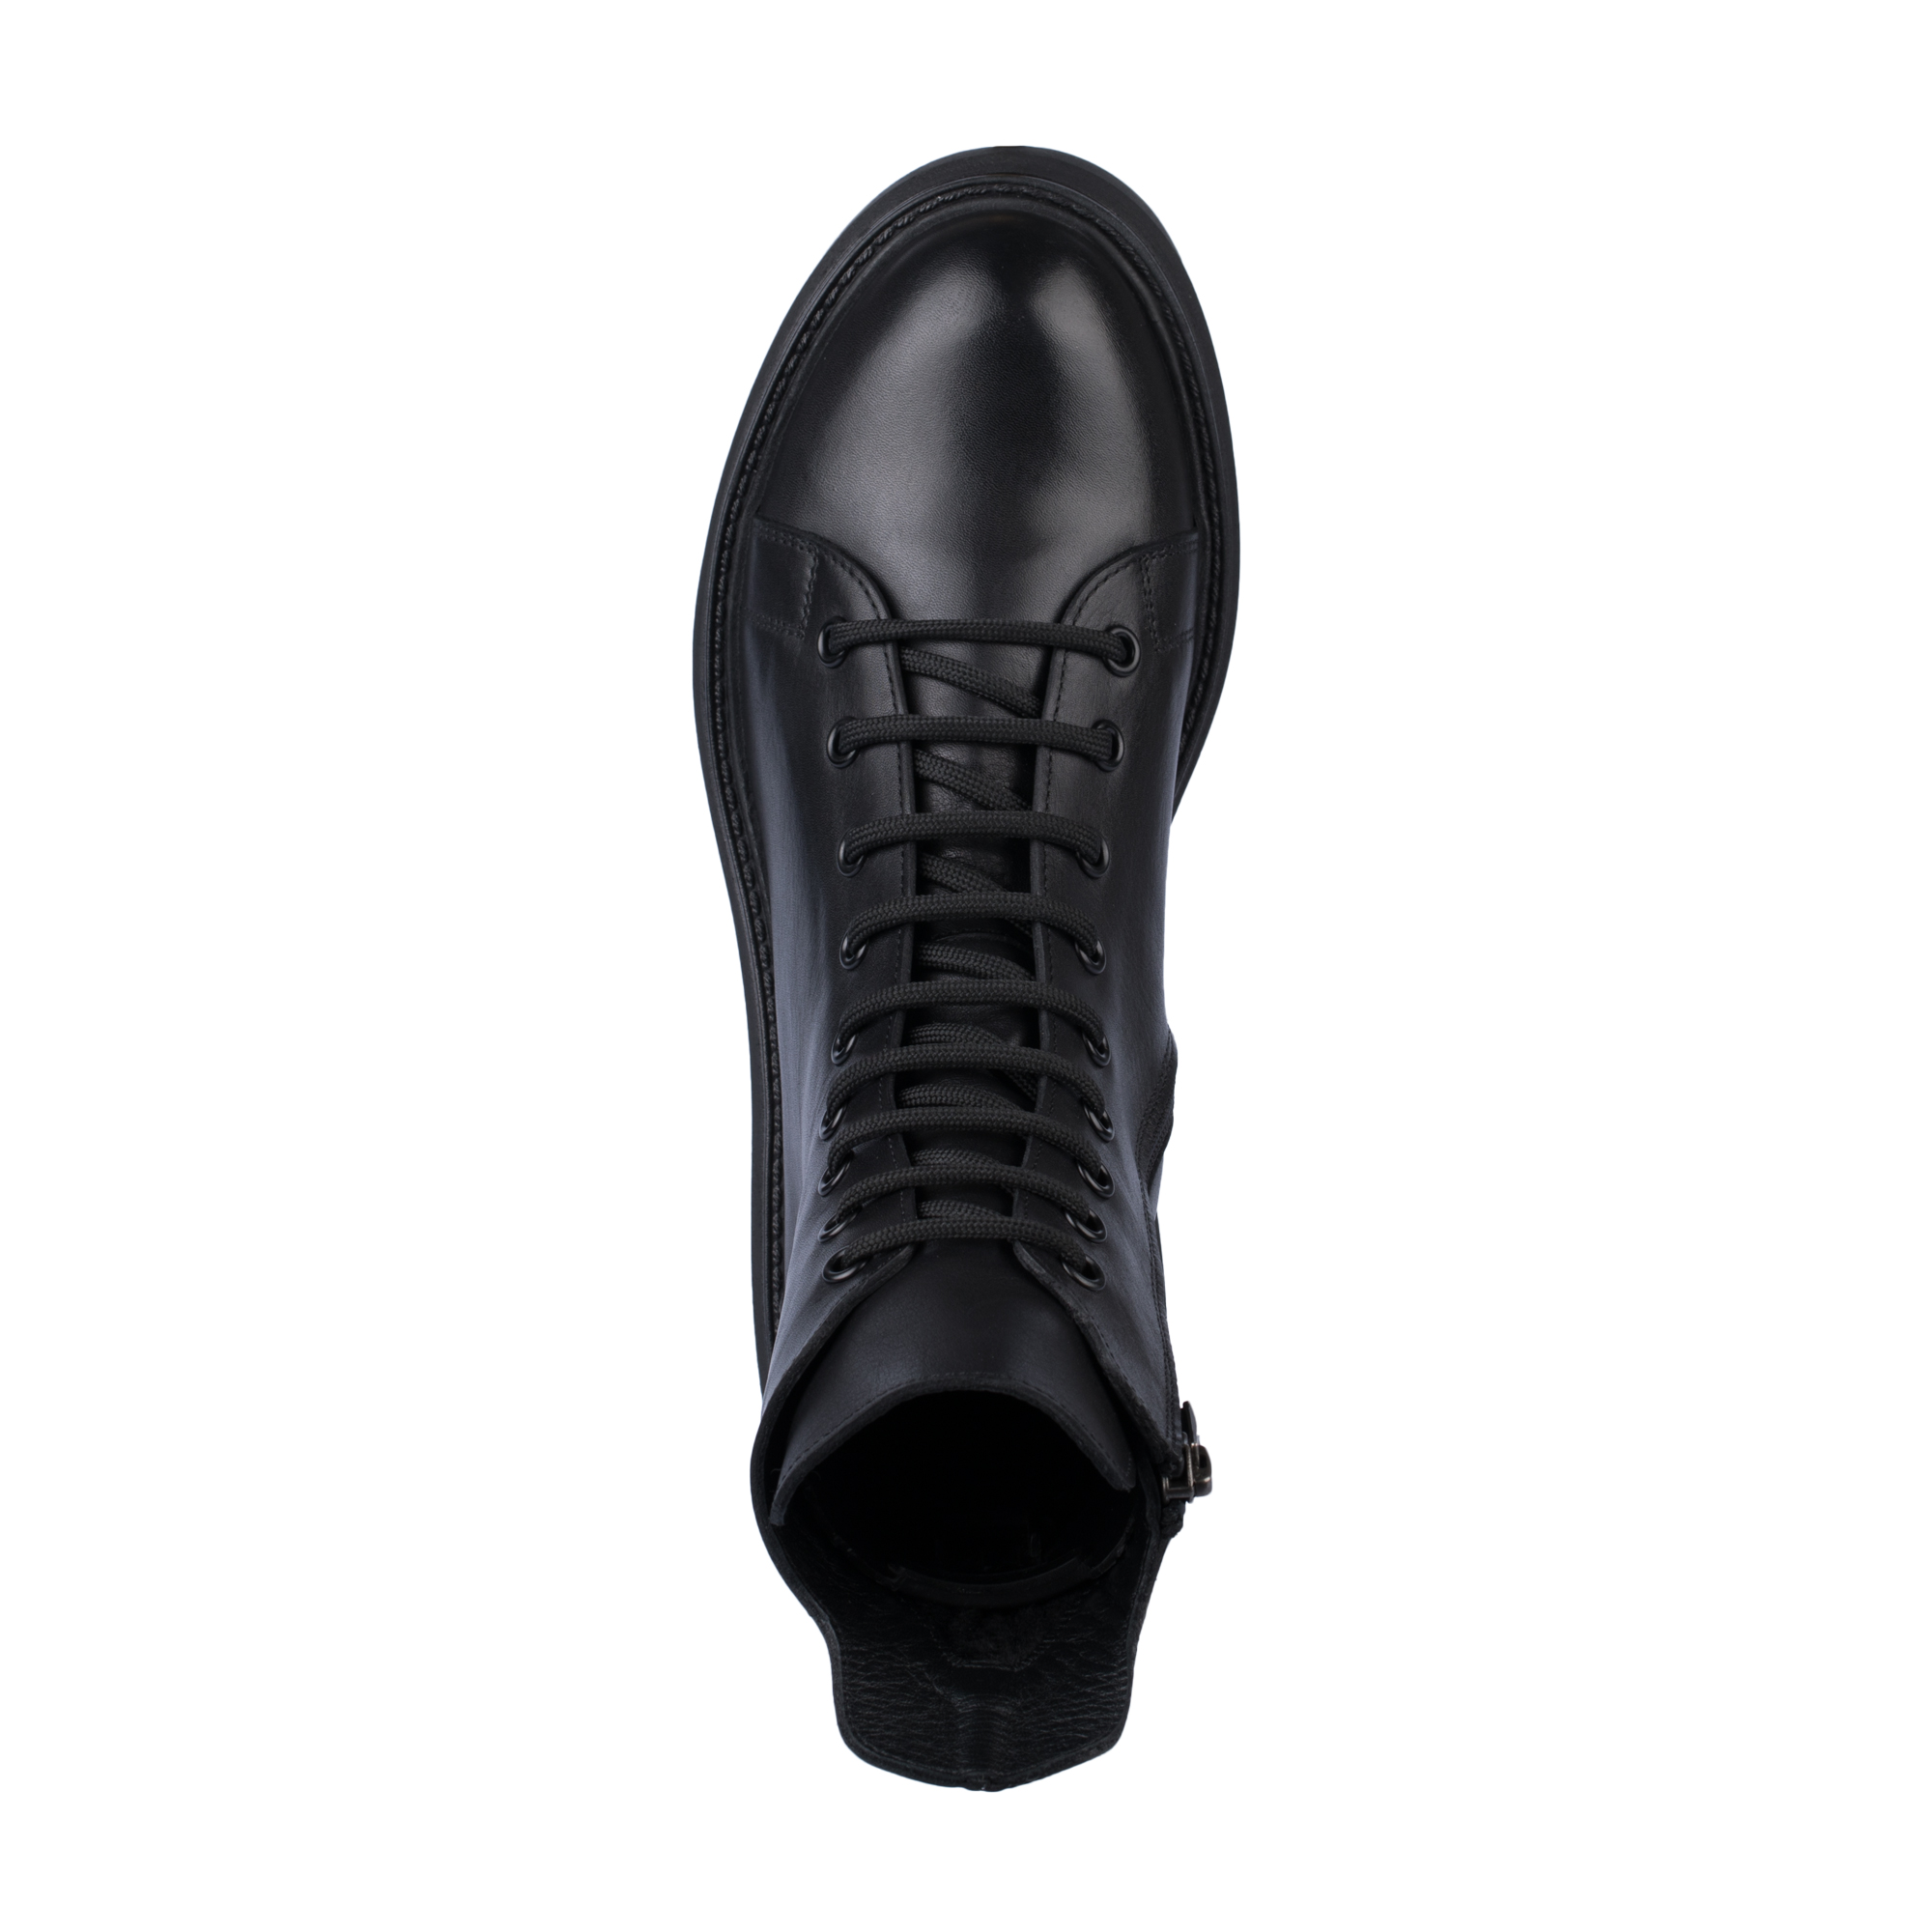 Ботинки Thomas Munz 539-021C-2102, цвет черный, размер 39 - фото 5